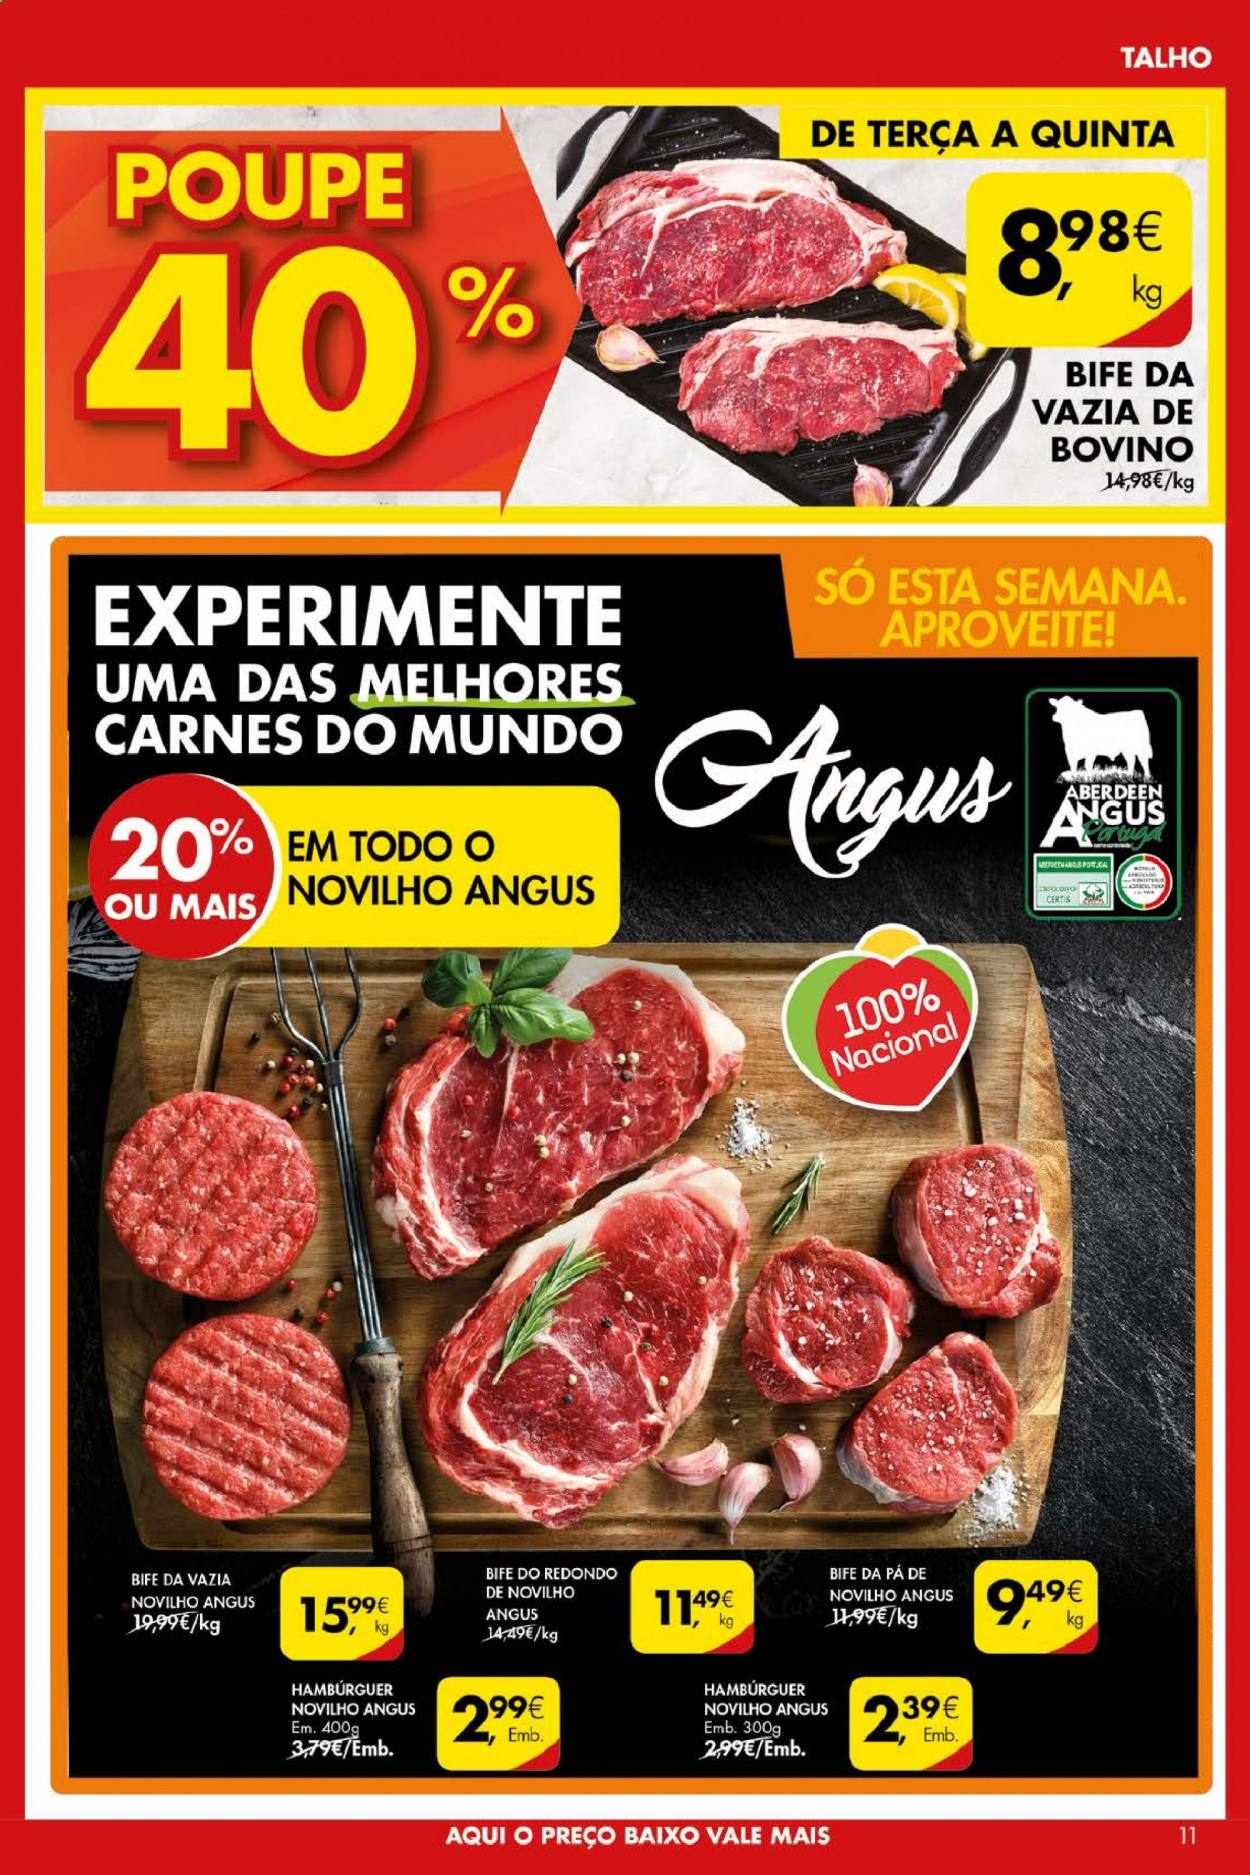 thumbnail - Folheto Pingo Doce - 11.5.2021 - 17.5.2021 - Produtos em promoção - bife, vazia de bovino, hamburger. Página 11.